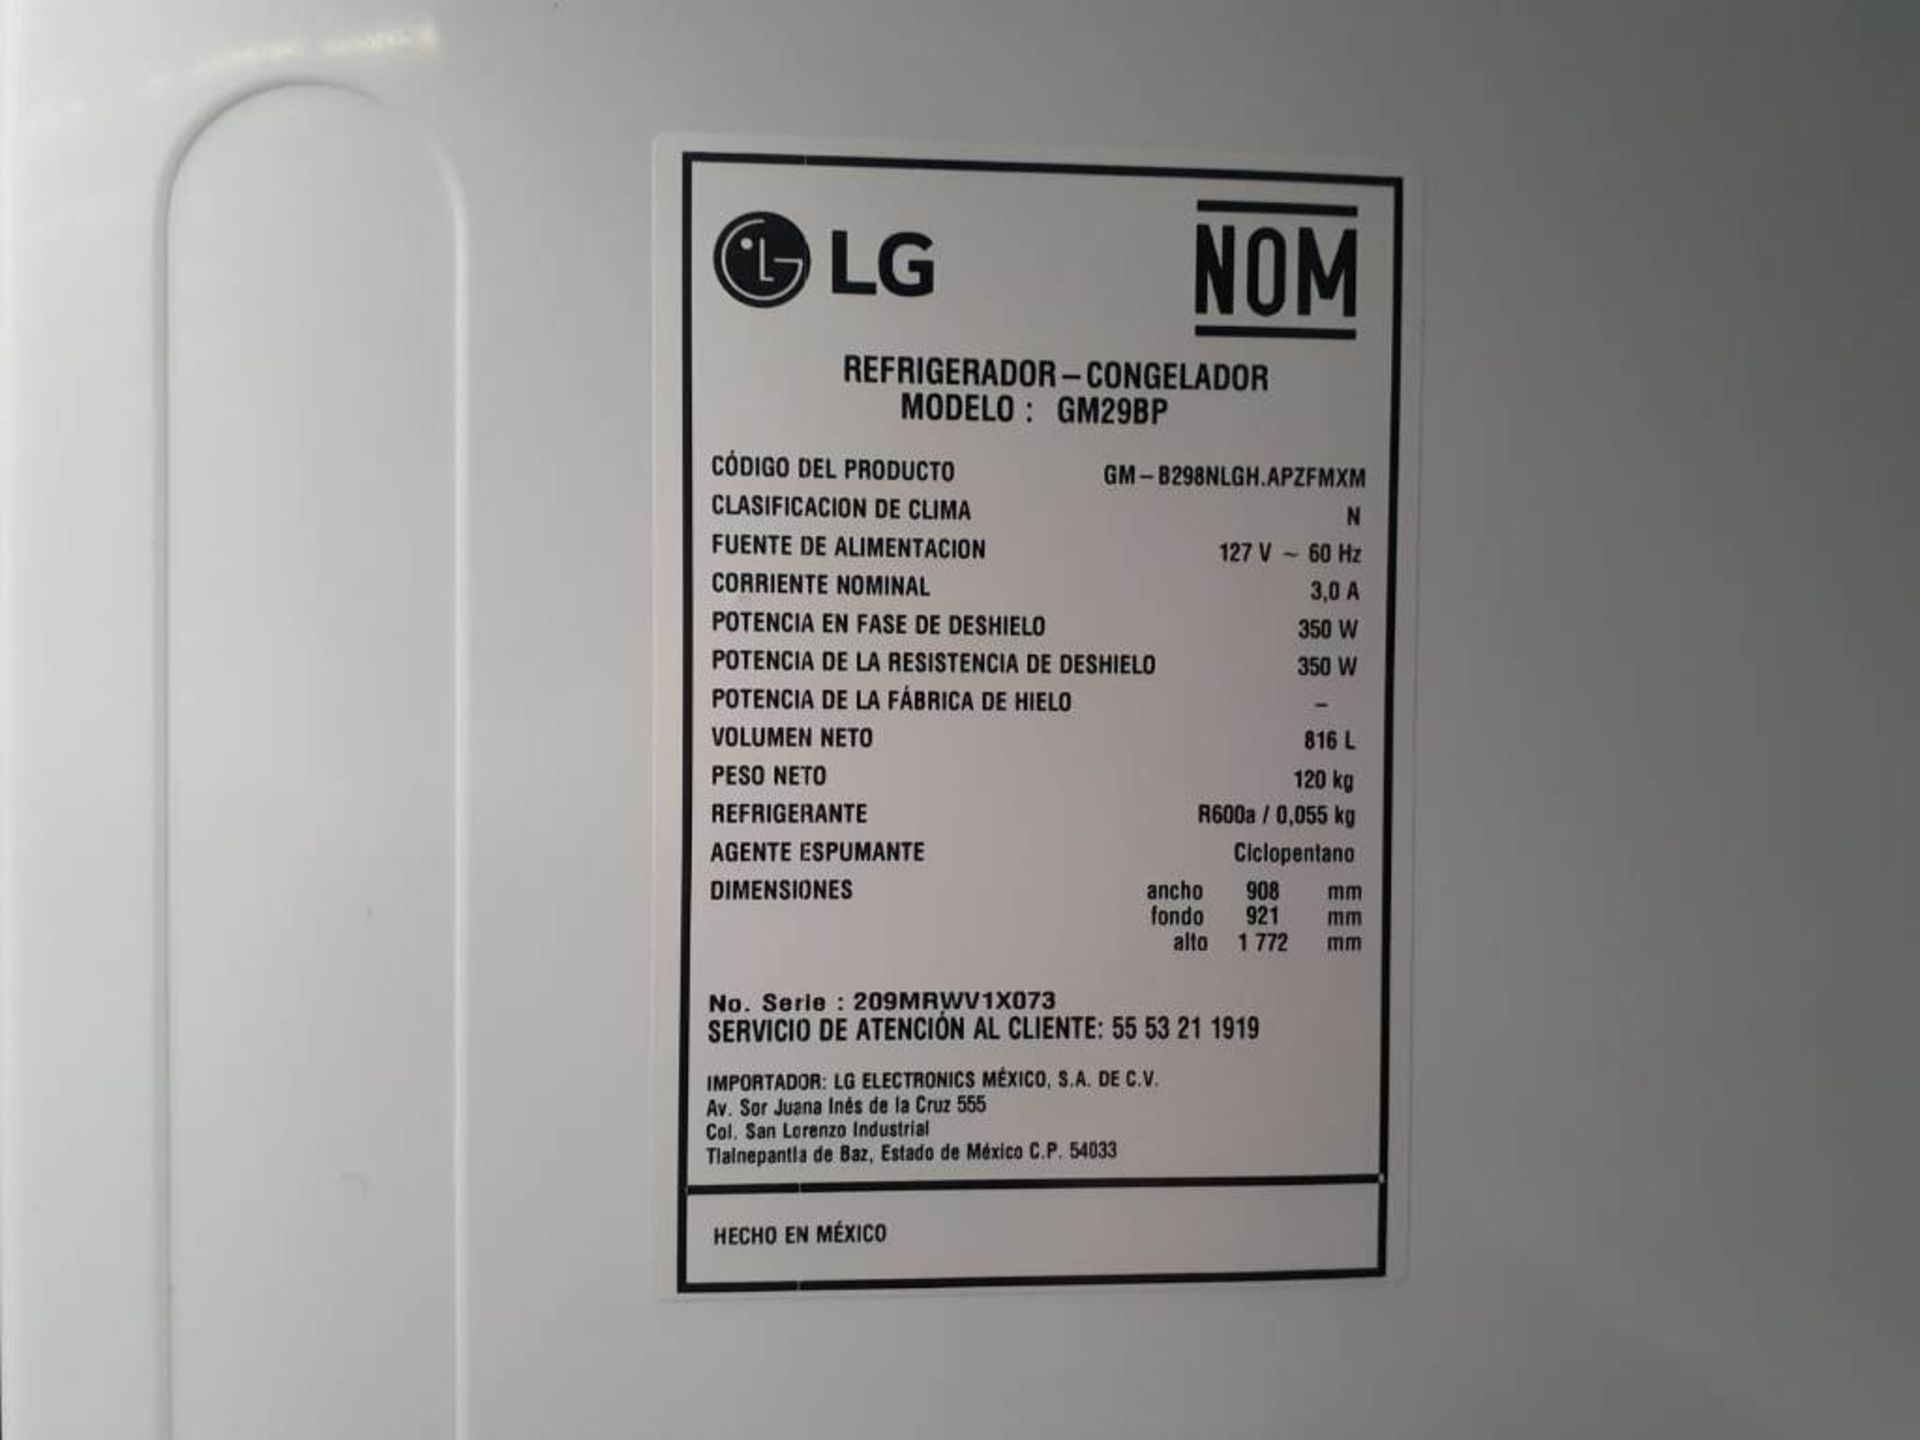 (Equipo nuevo) 1 Refrigerador Marca LG, Modelo GM29BP, Serie V1X073, Color GRIS;(Nuevo, excelente e - Image 5 of 6